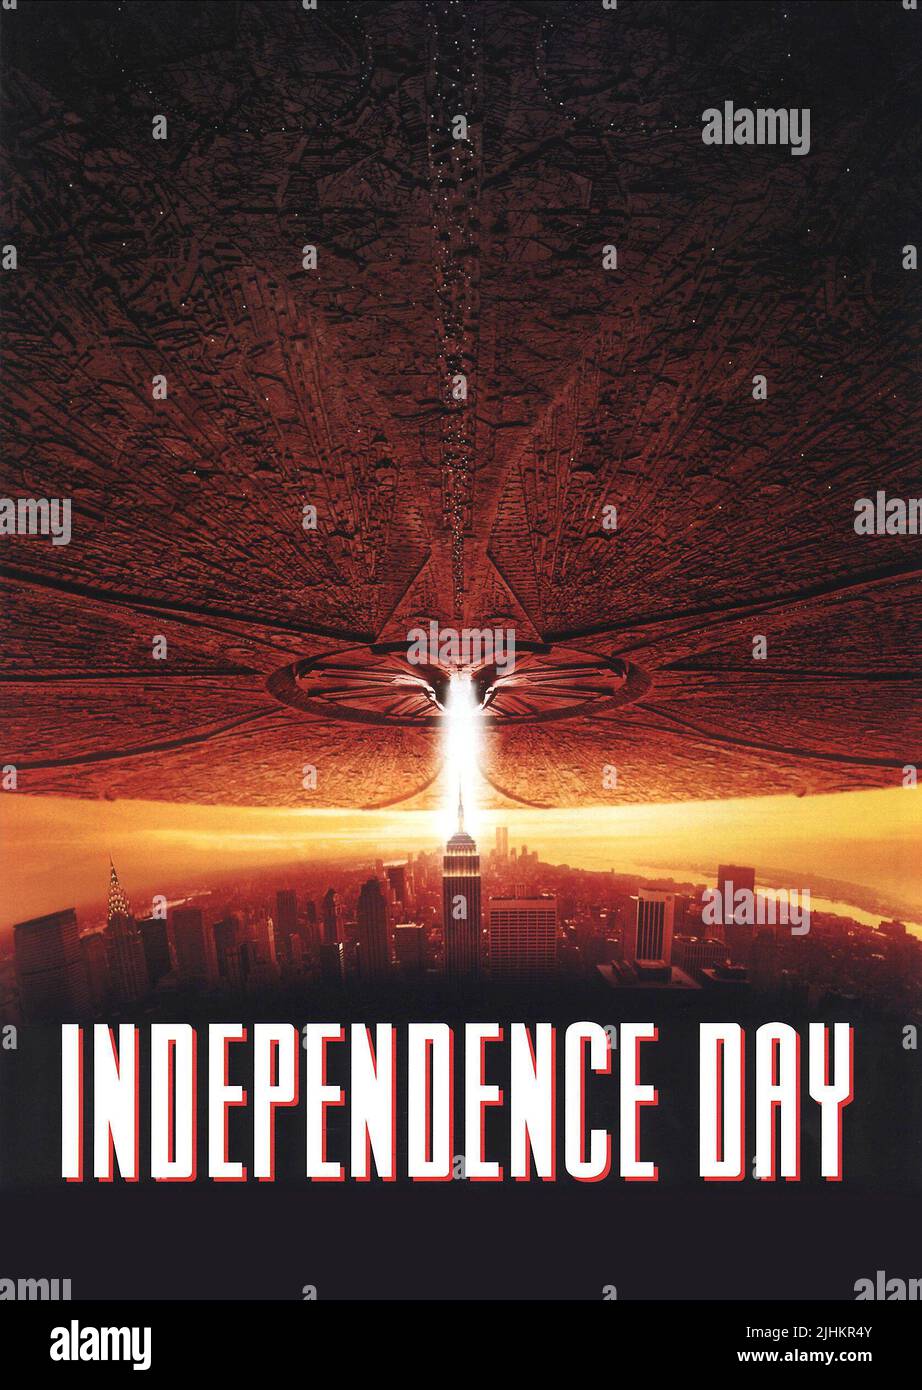 https://c8.alamy.com/compfr/2jhkr4y/poster-du-film-jour-de-l-independance-1996-2jhkr4y.jpg